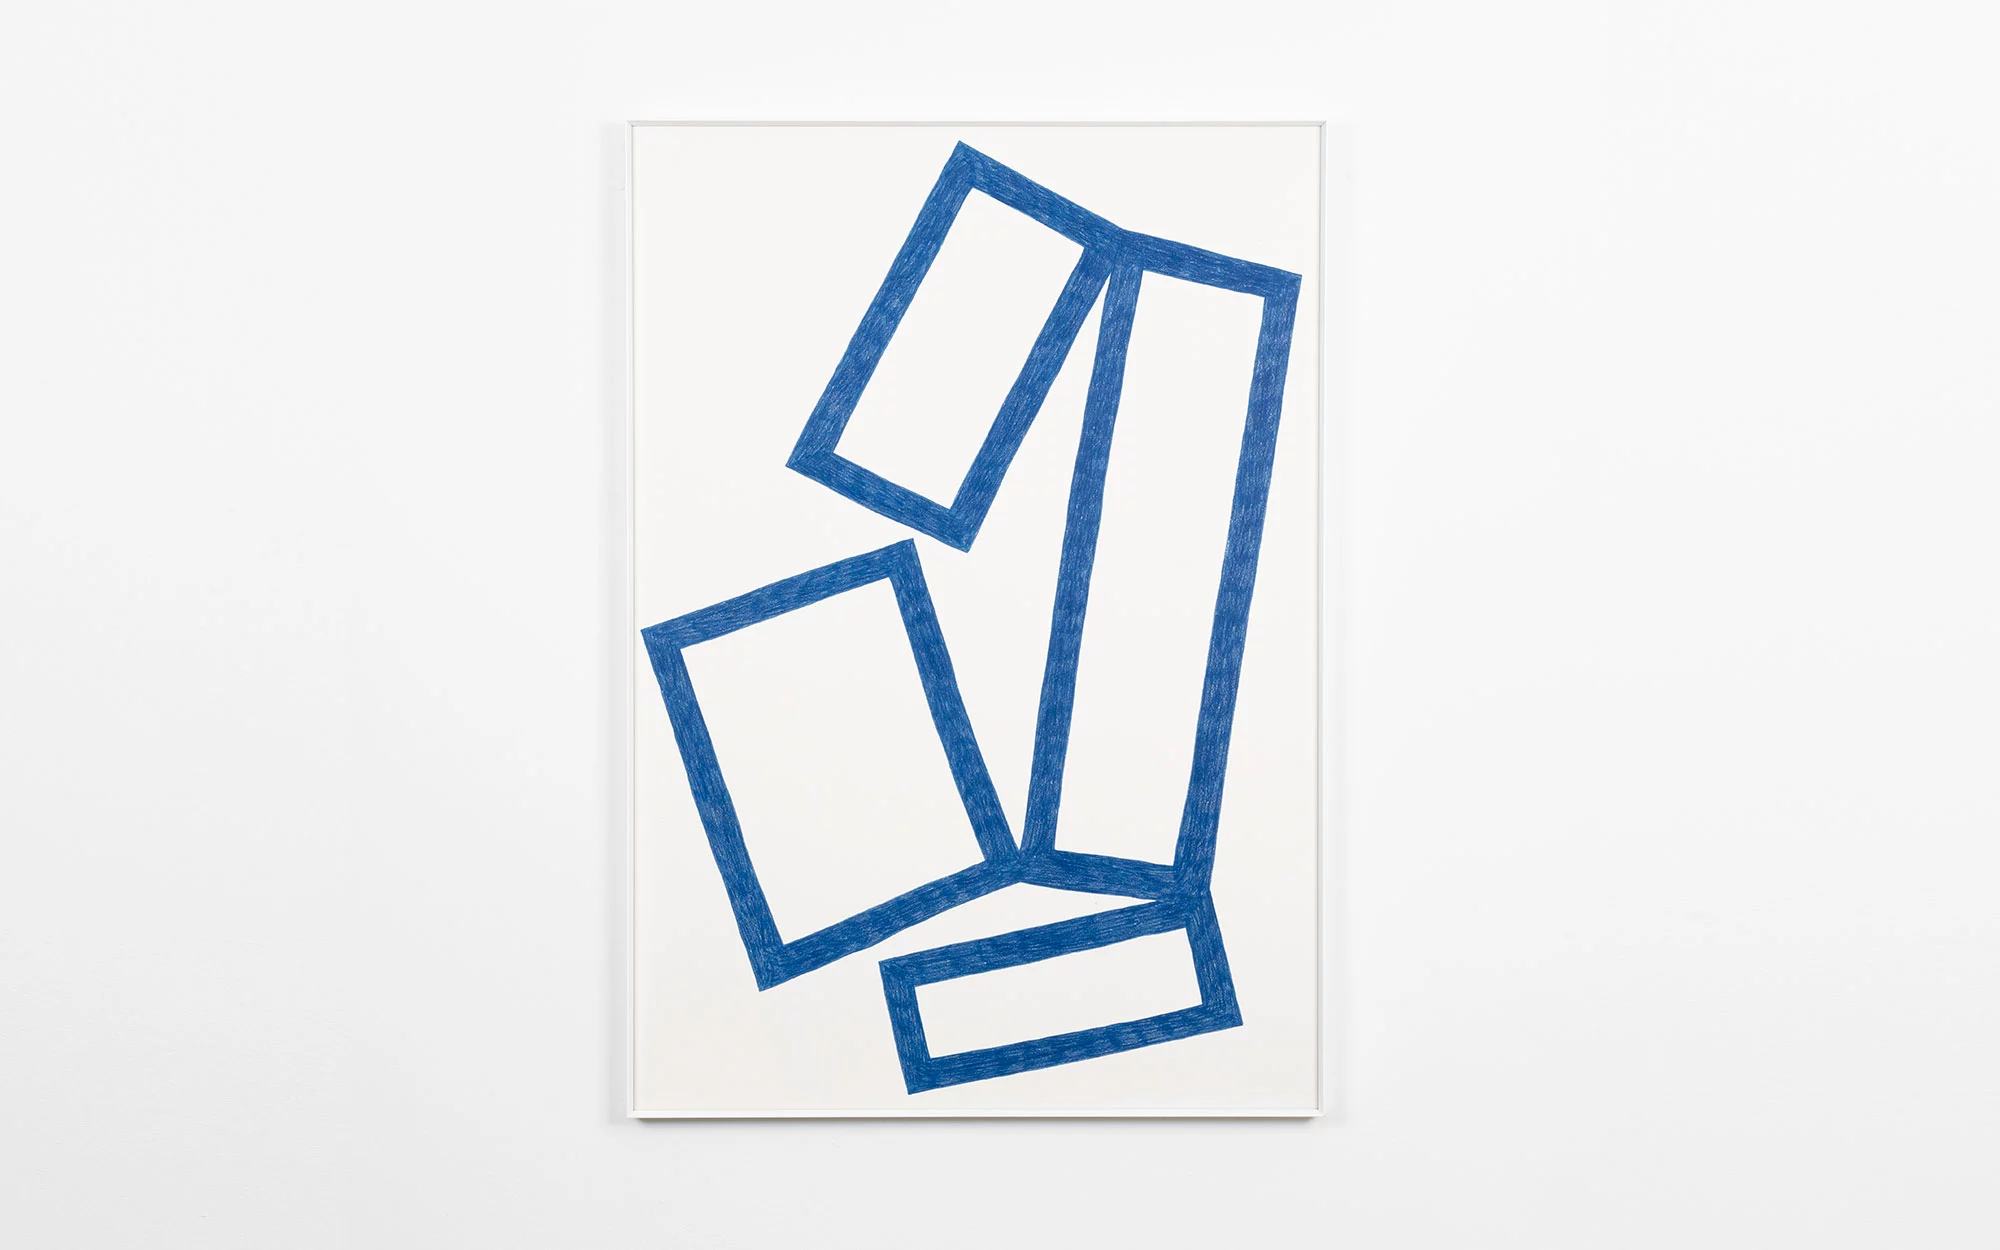 Cubes Drawings - Pierre Charpin - Mirror - Galerie kreo